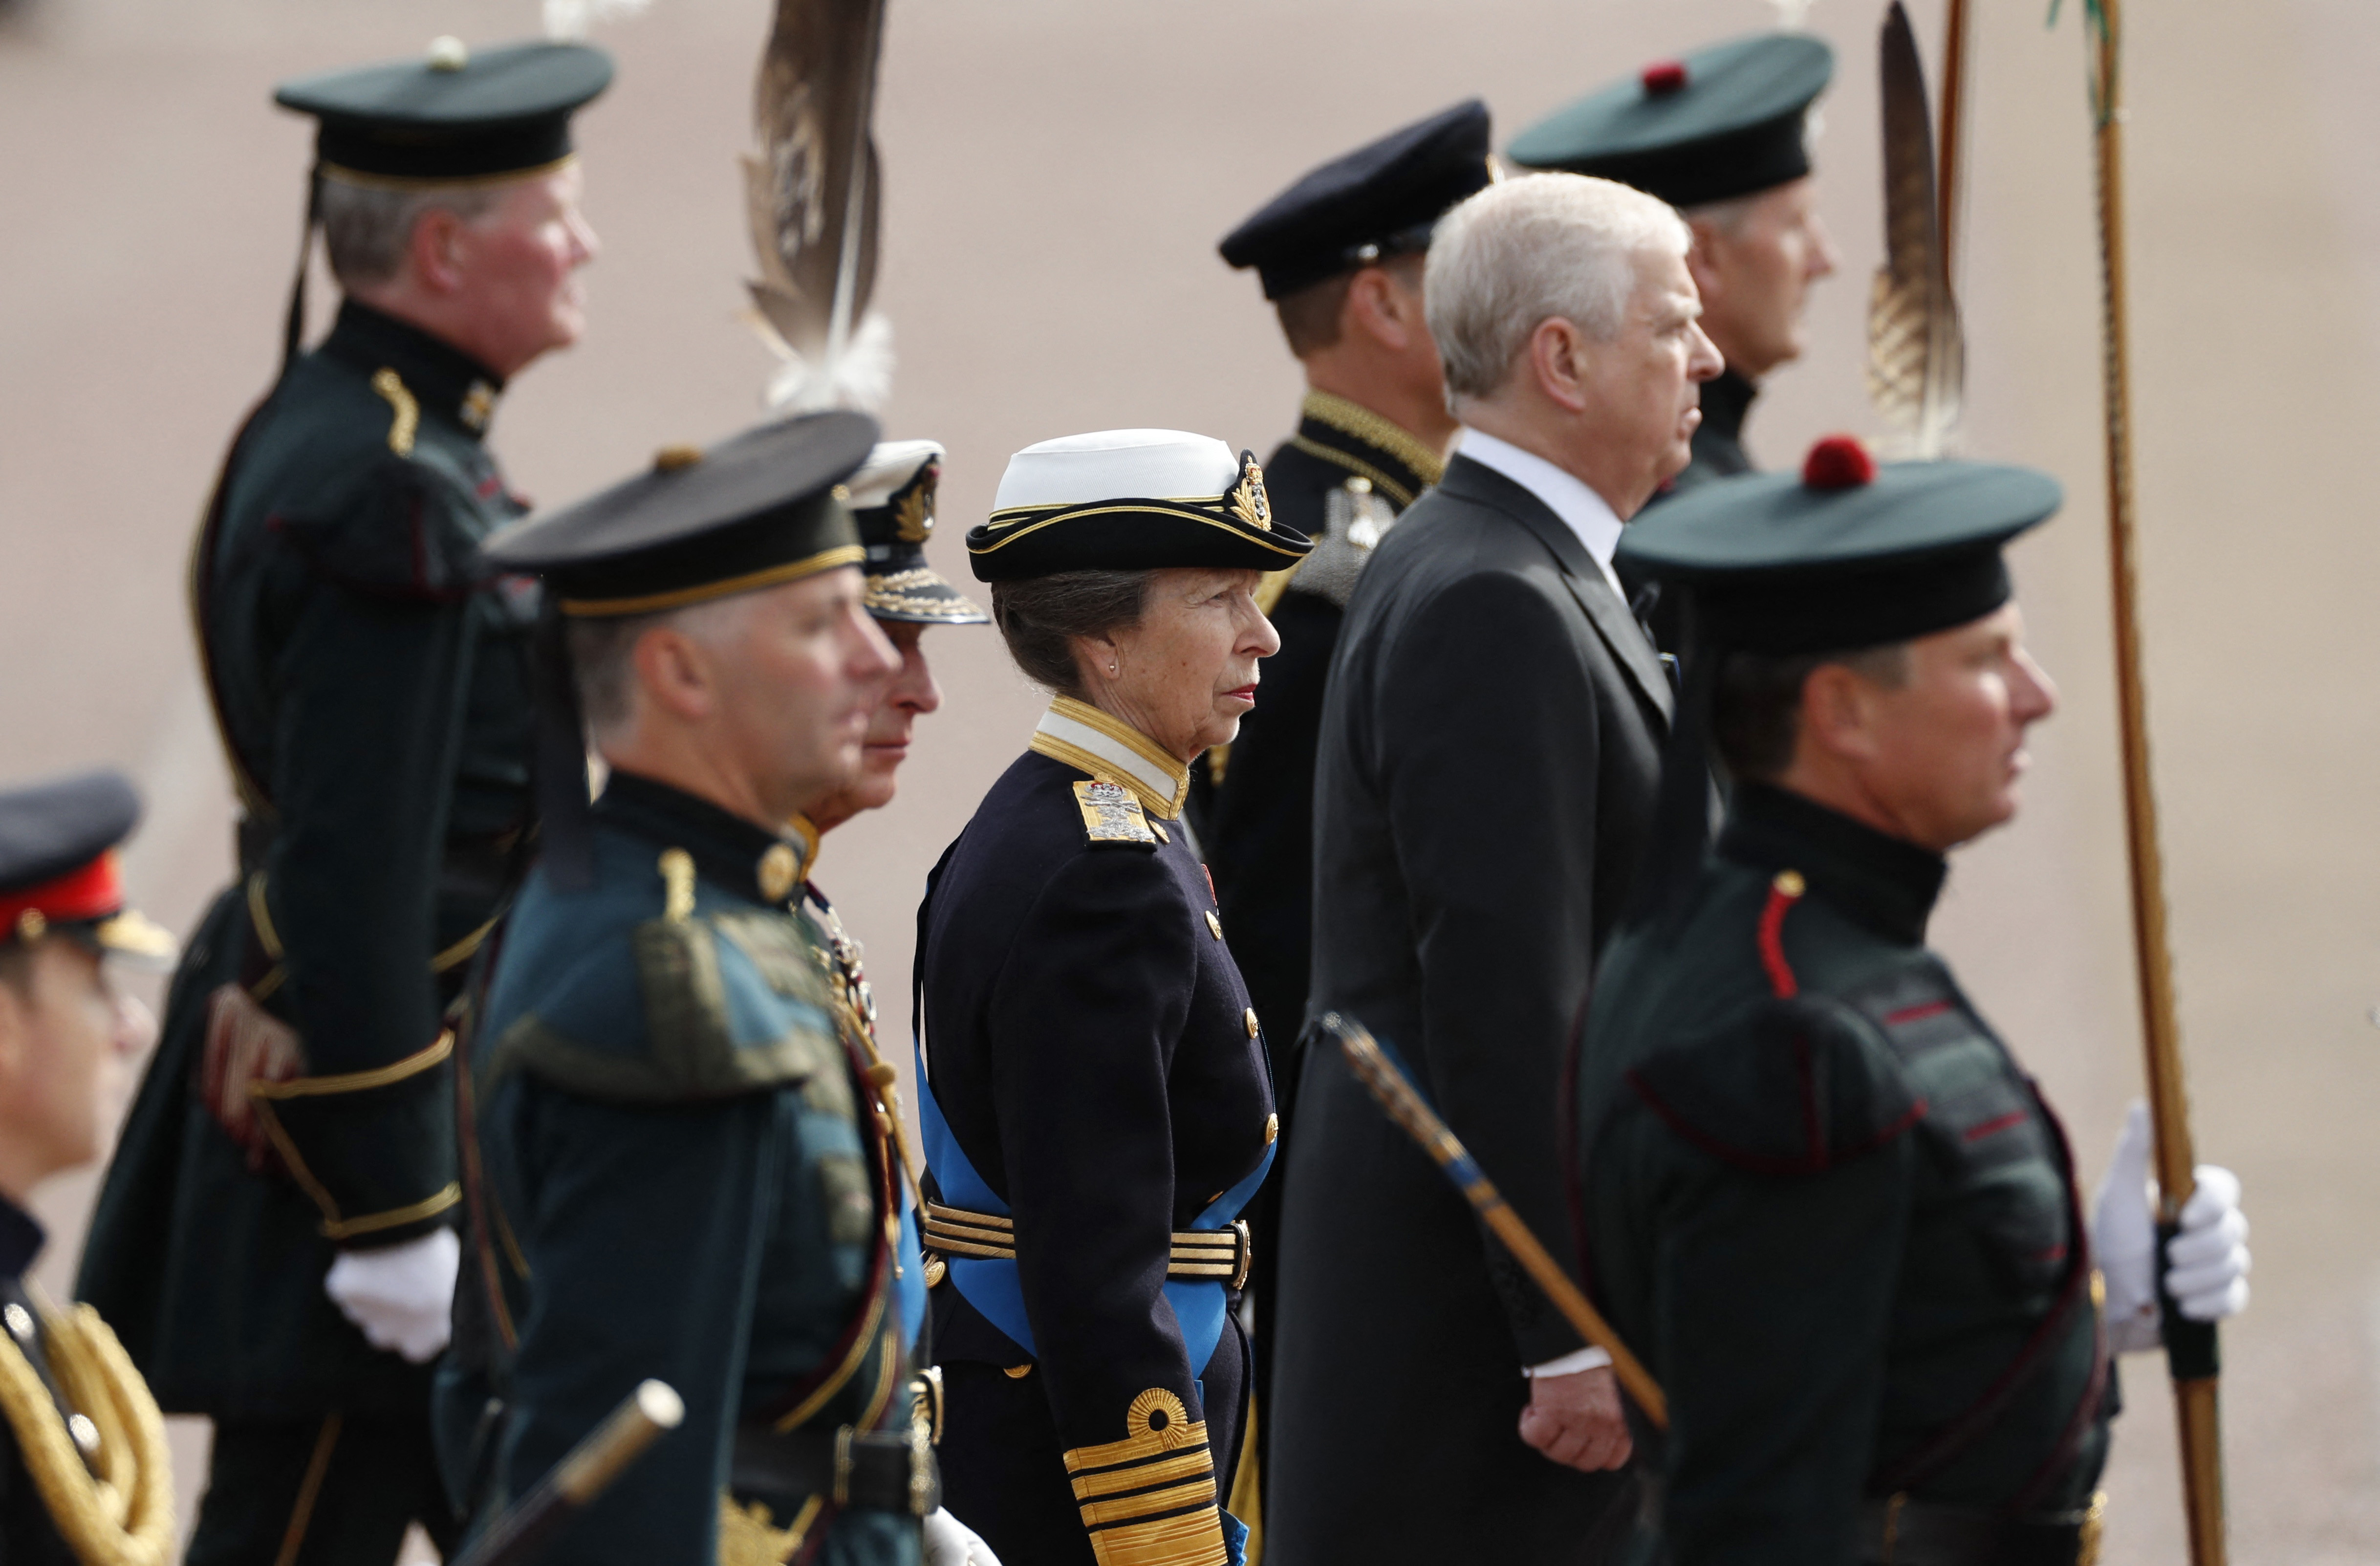  Si bien la princesa real no ha prestado servicio militar, está en posesión de una serie de honores y títulos (REUTERS)